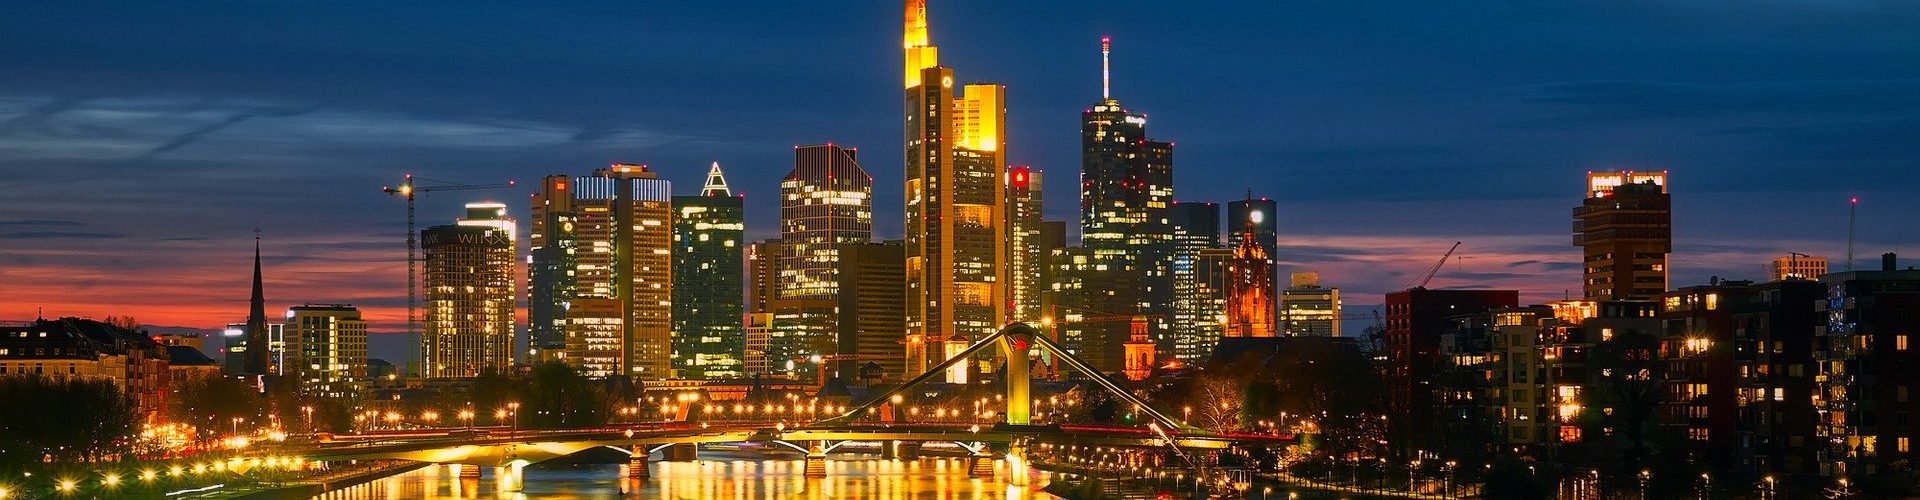 Frankfurt-Skyline-Night